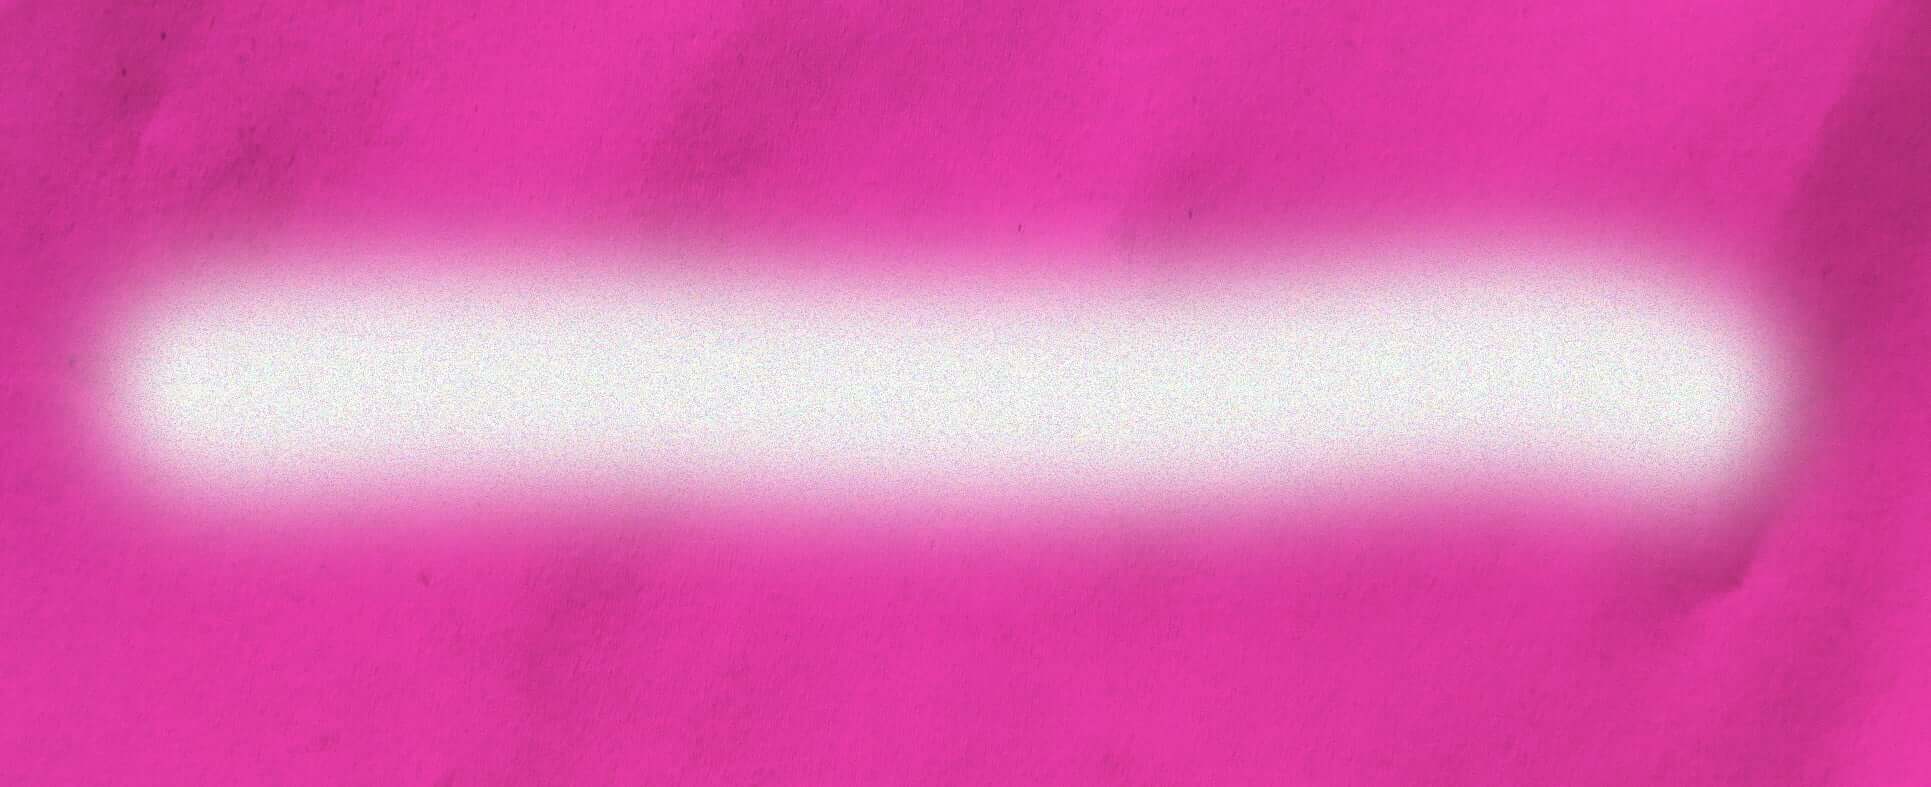 Gradient pink background.